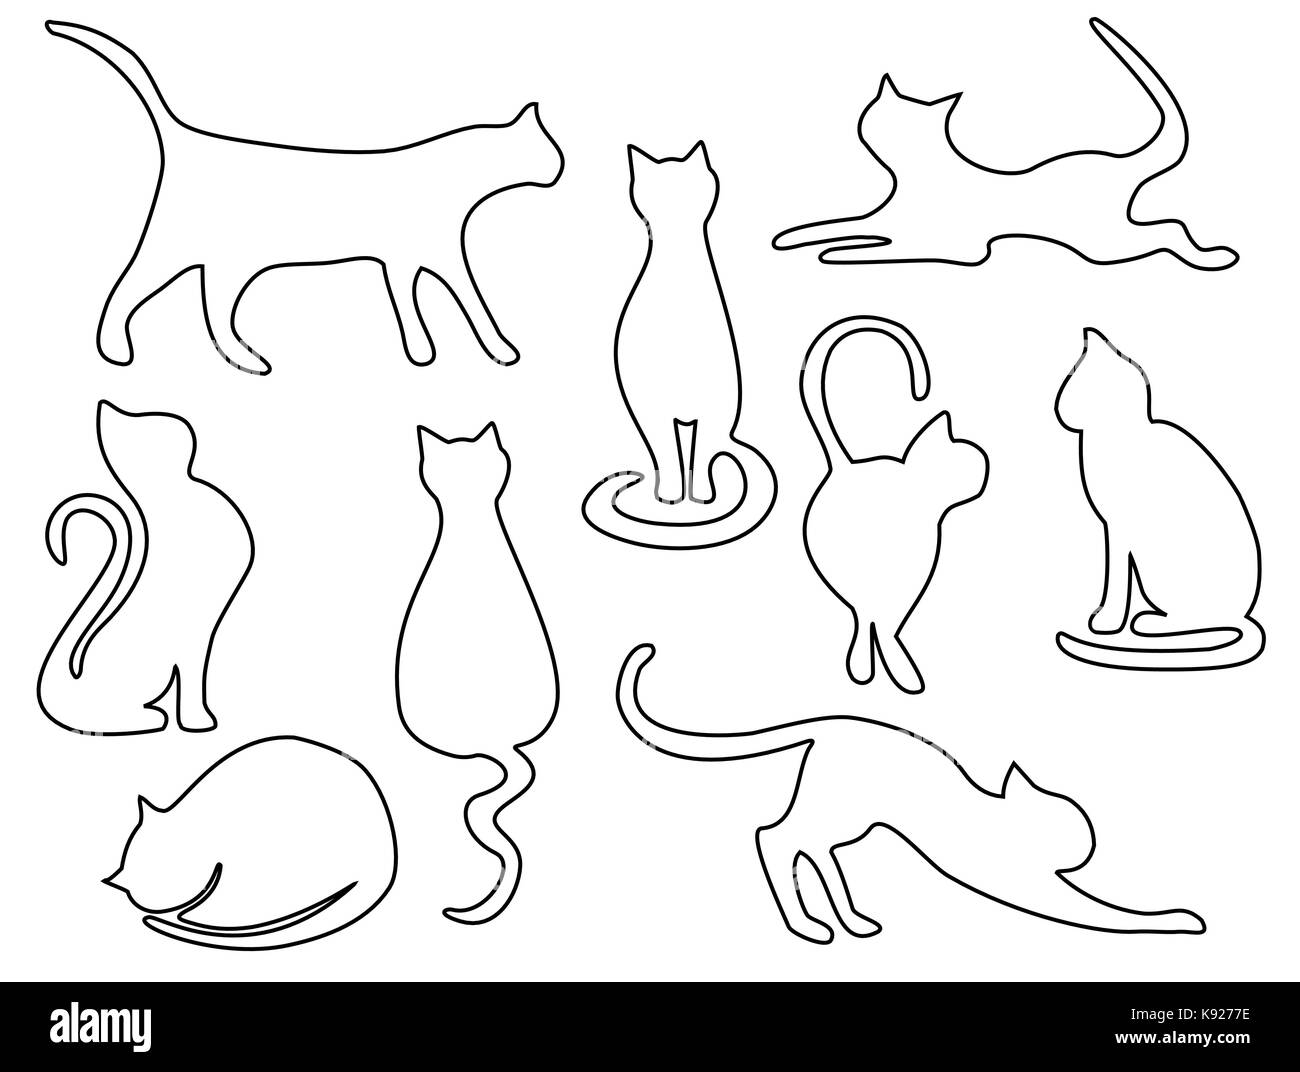 gato dibujo Imágenes recortadas stock Alamy